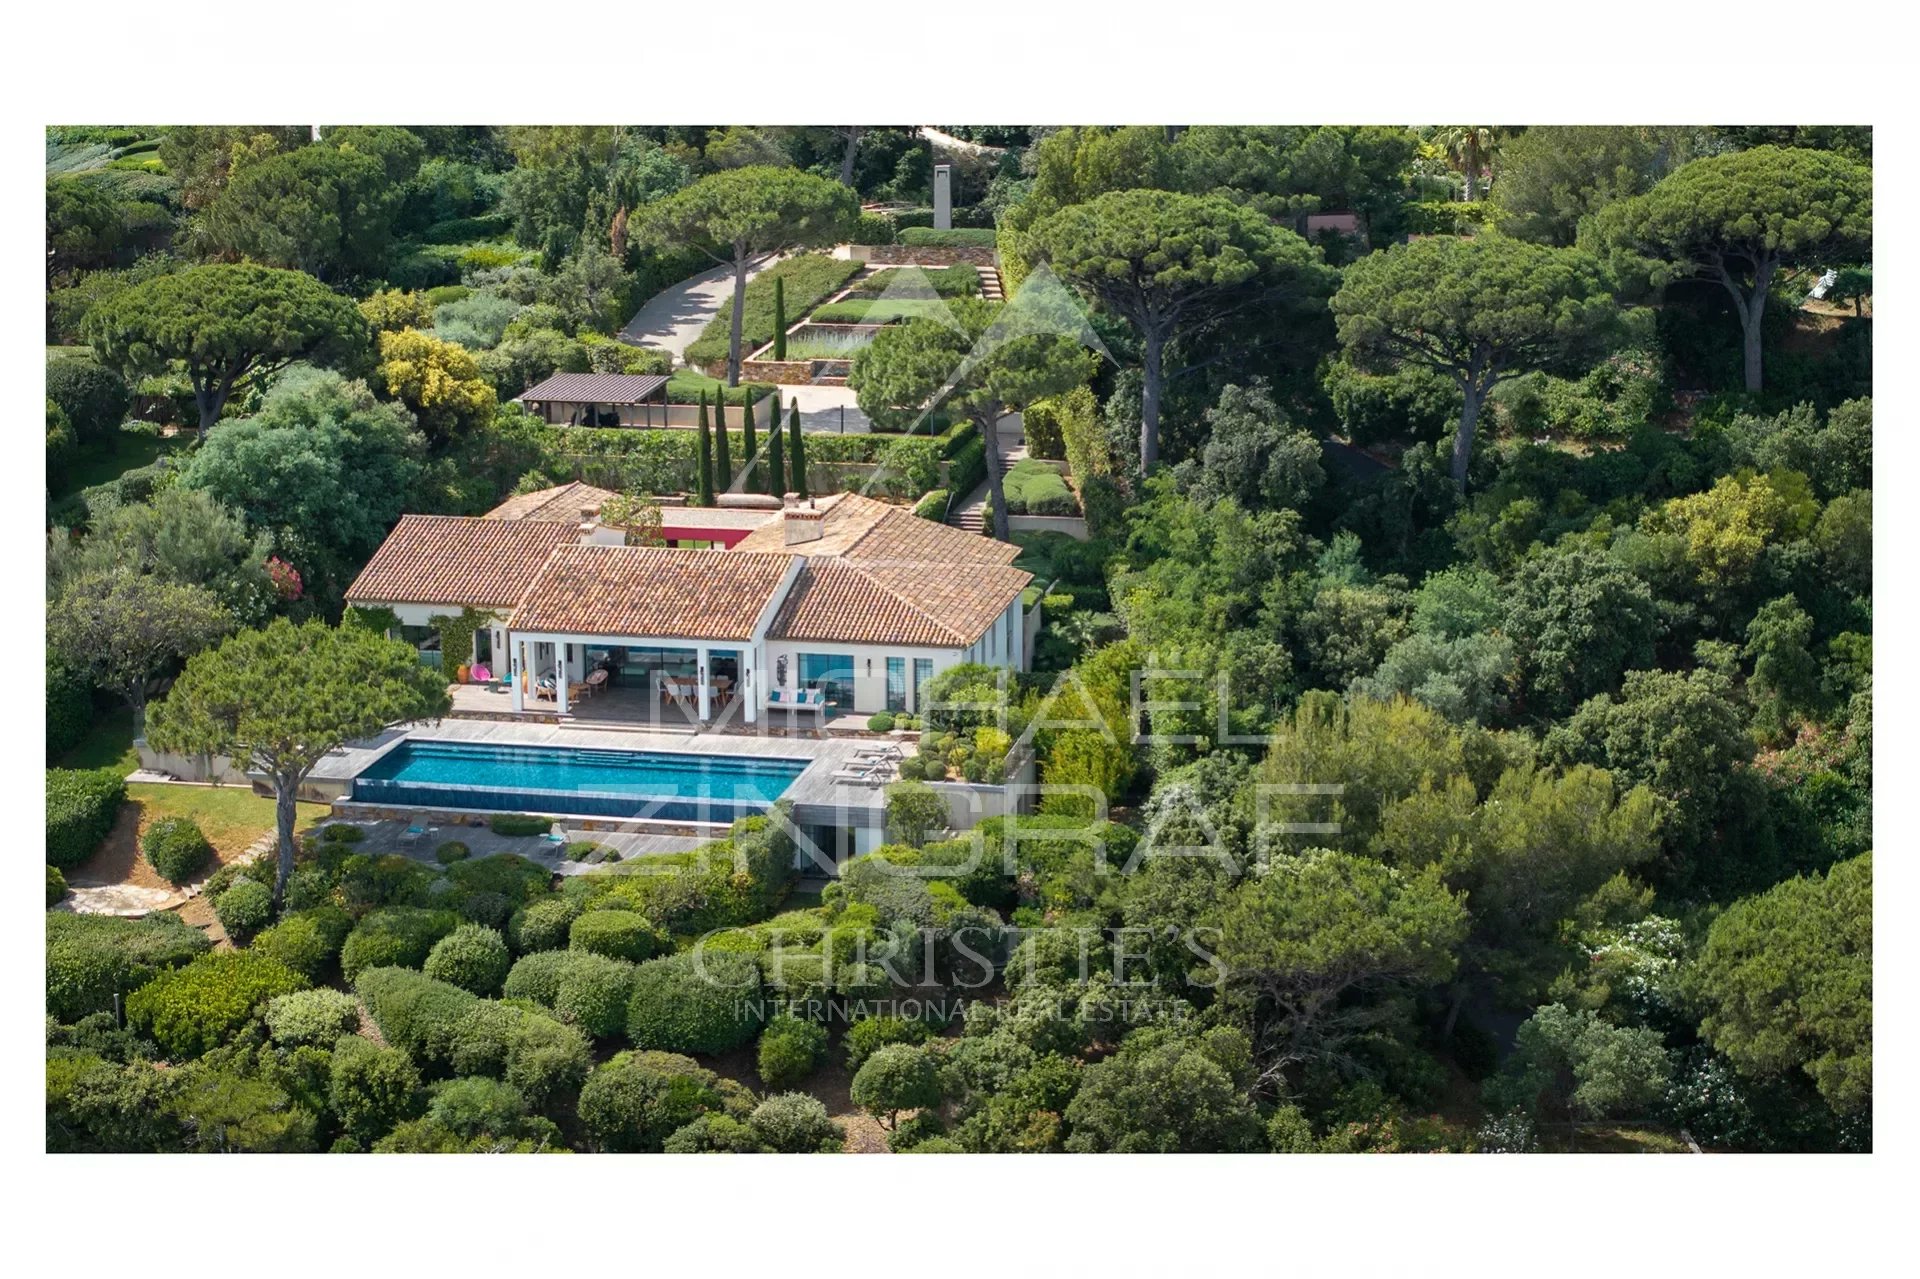 Saint-Tropez - Les Parcs, exceptional contemporary villa